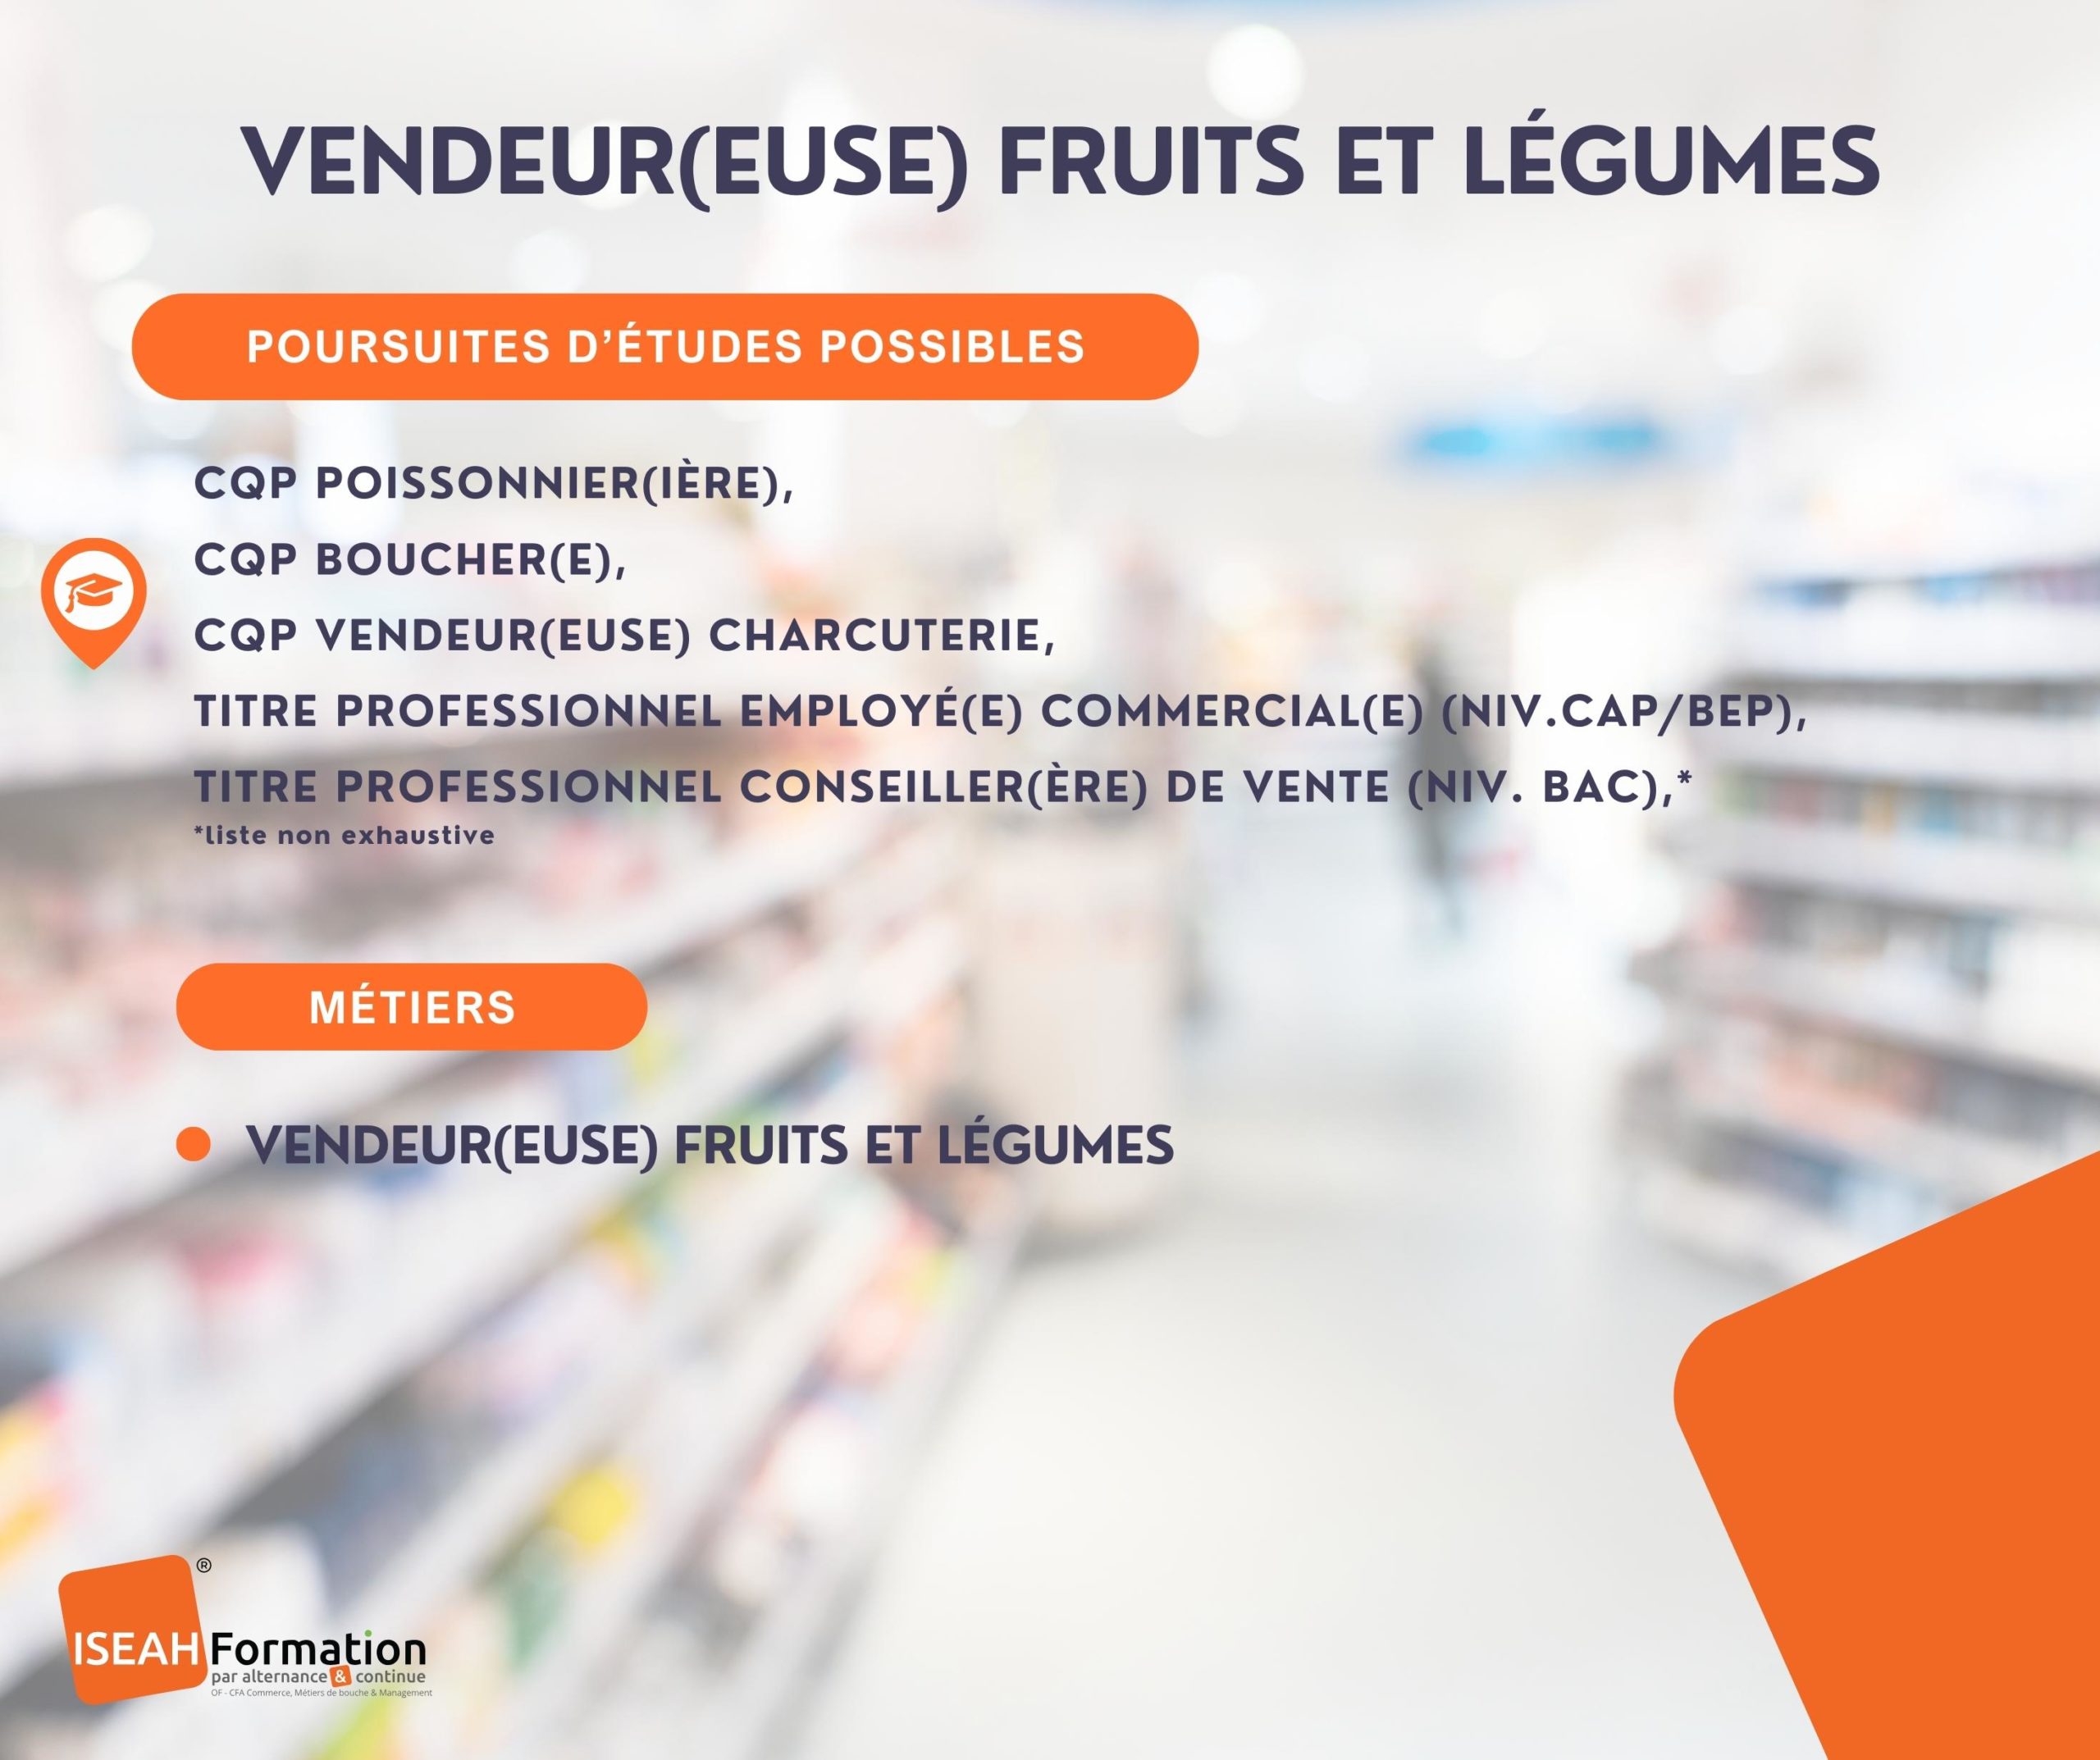 Vendeur fruits et légumes